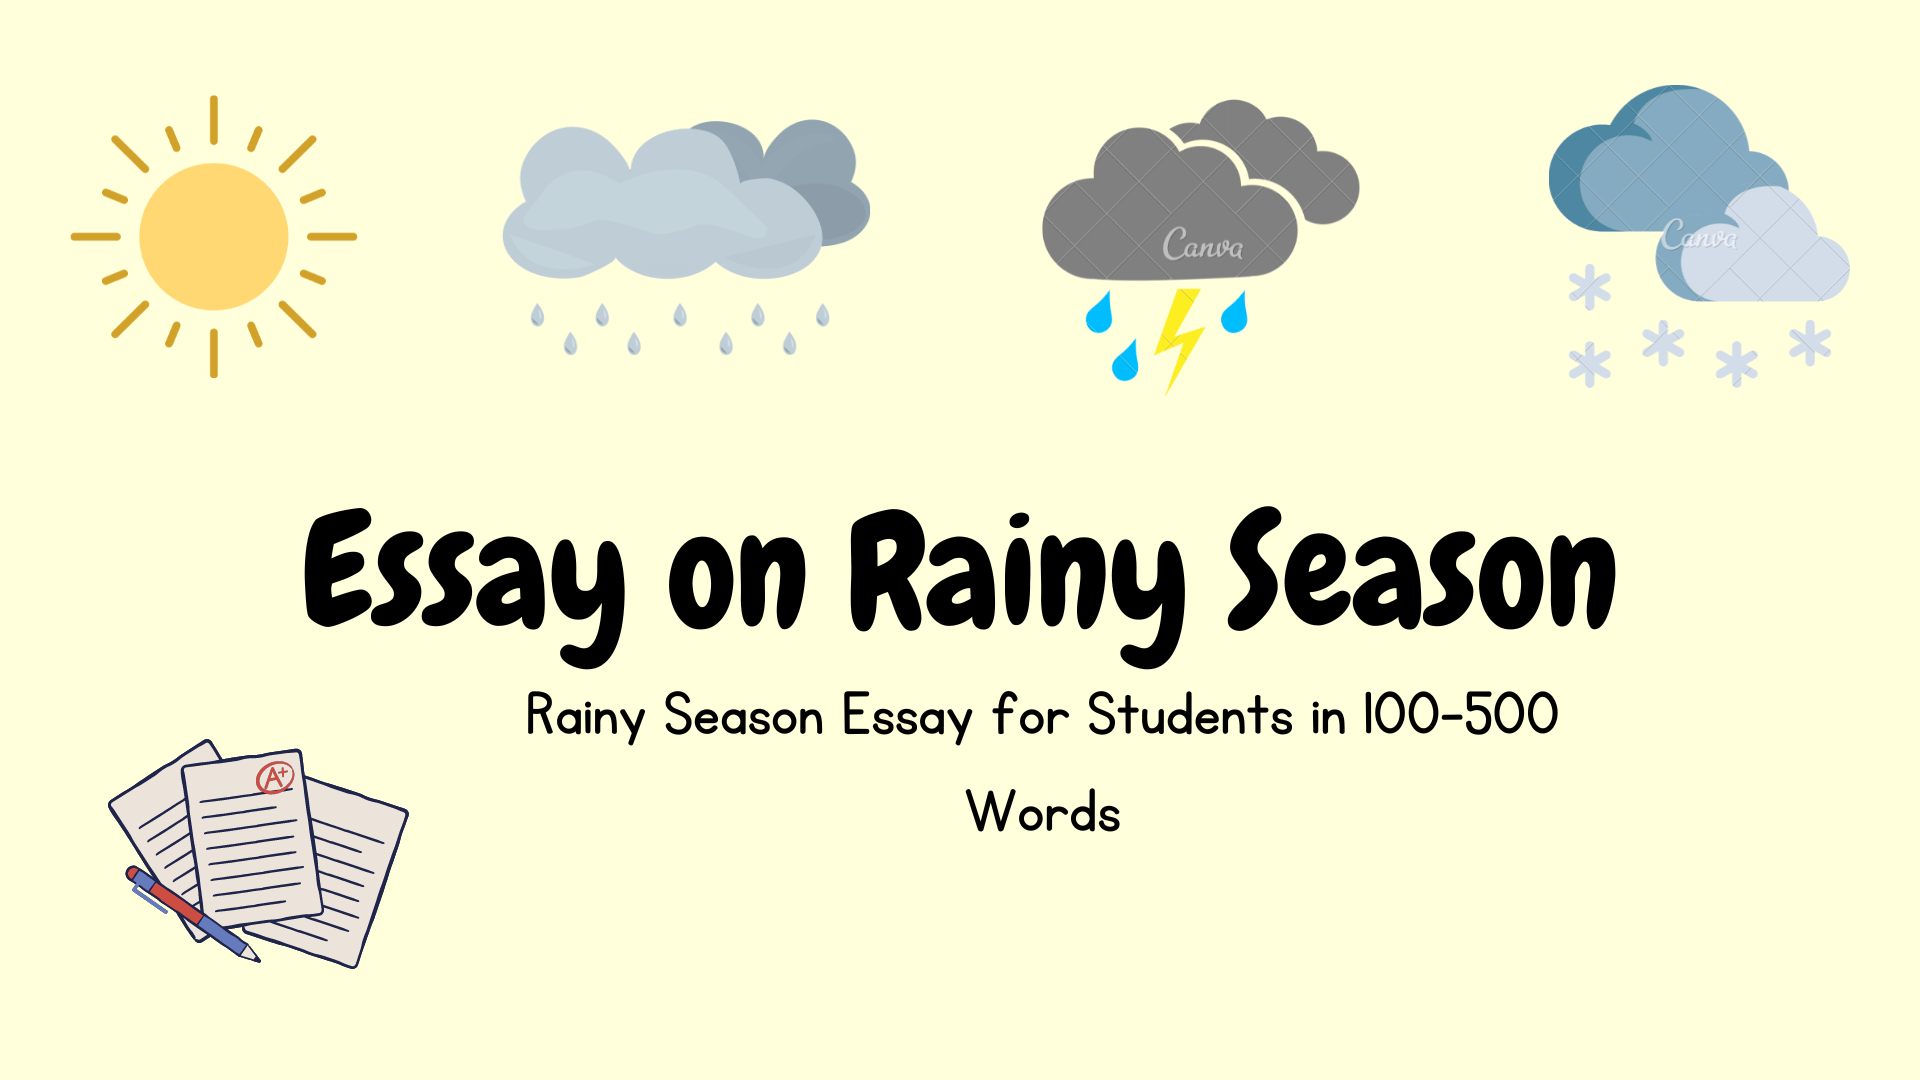 Essay-on-Rainy-Season Image